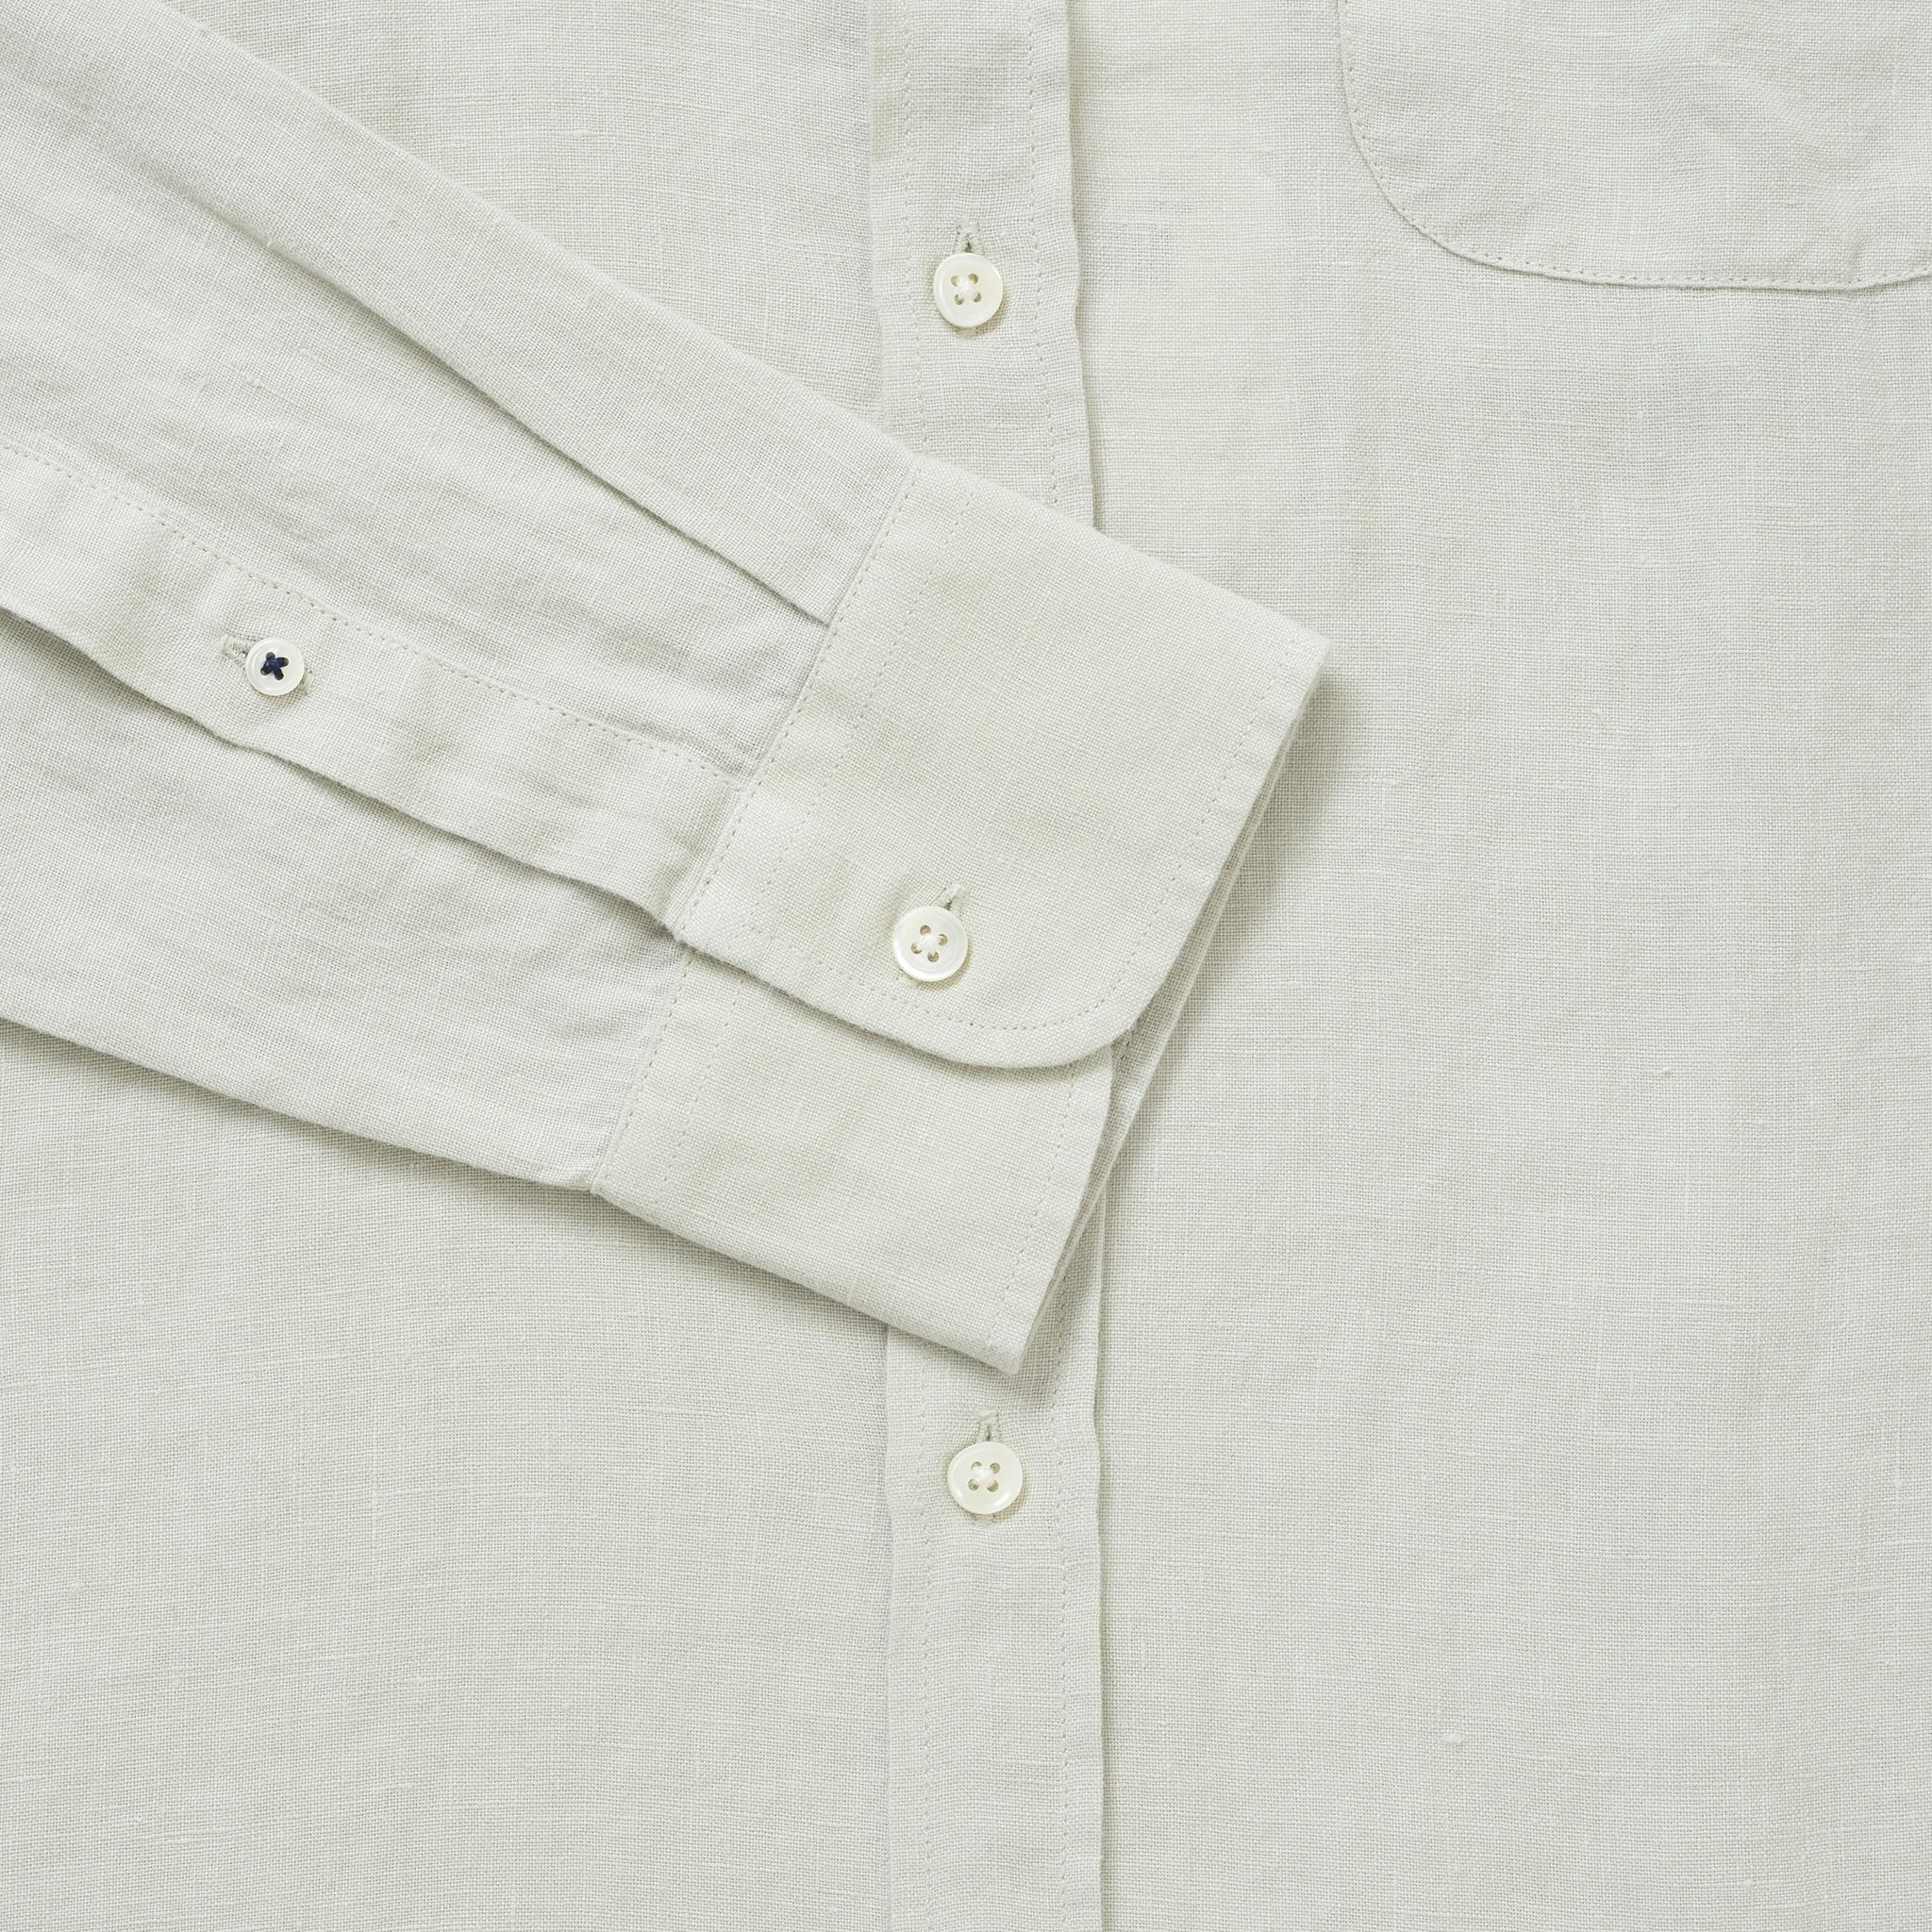 100% Linen Collarless Shirt - Light Sage